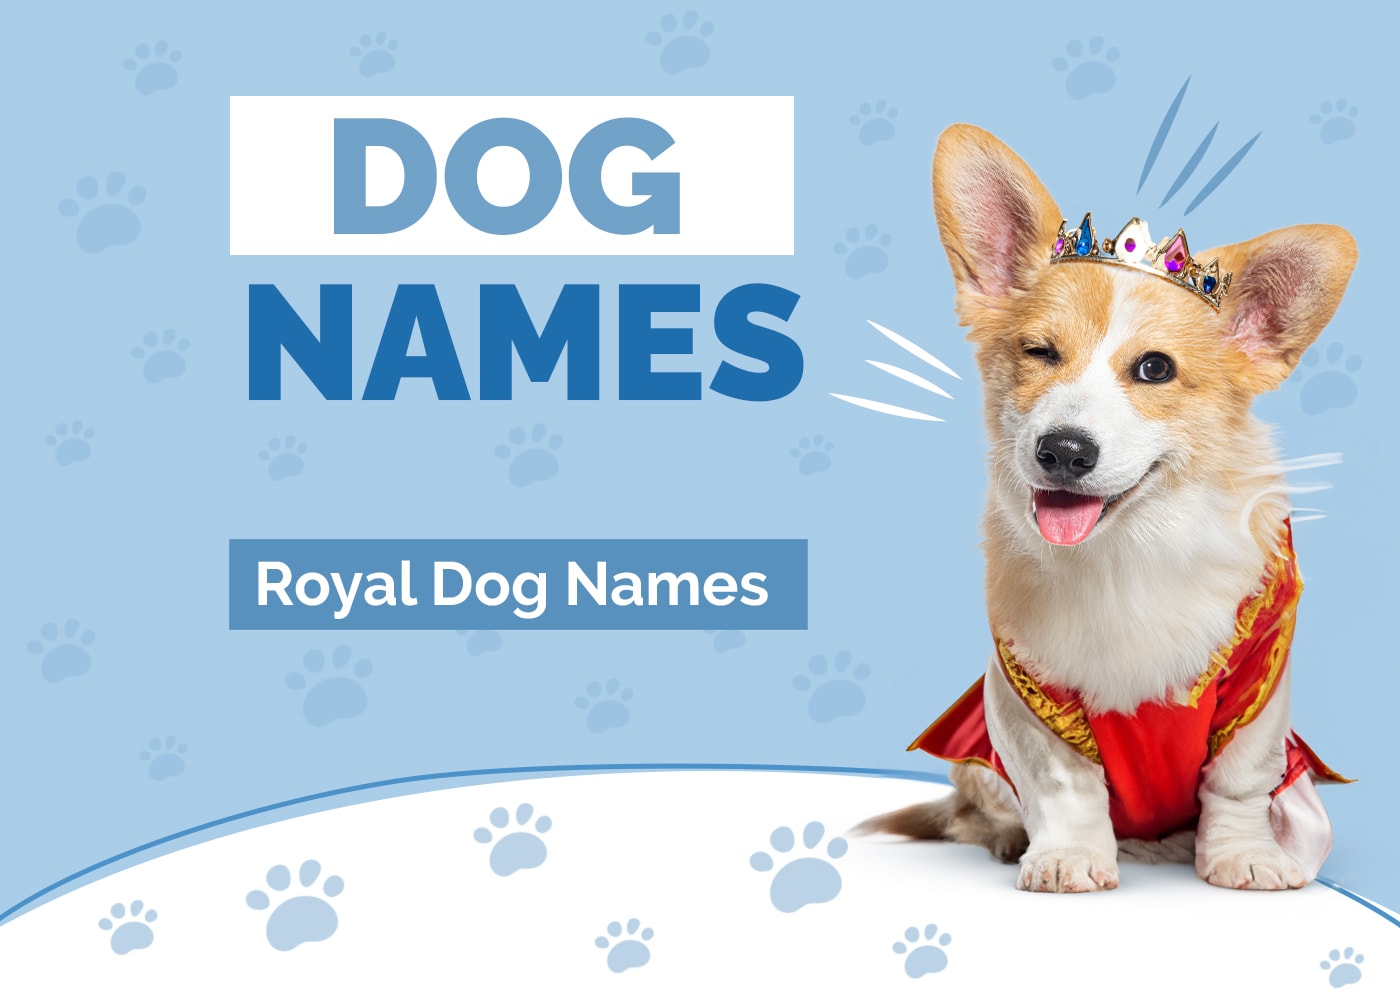 Royal Dog Names